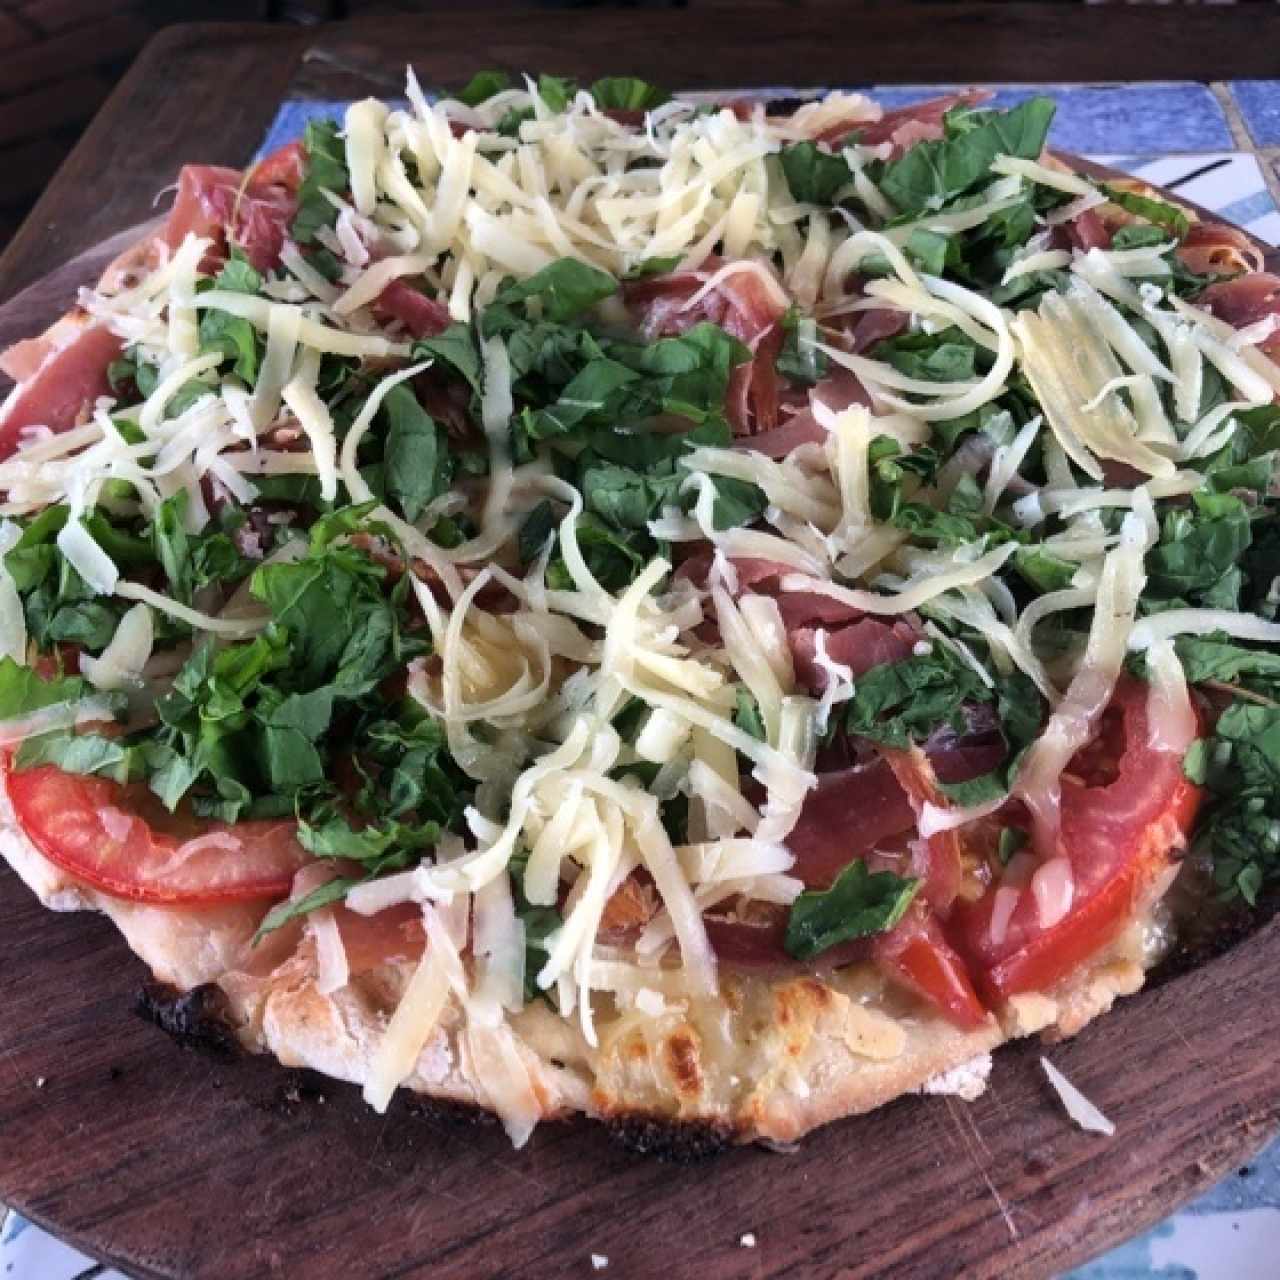 pizza de jamon serrano, tomate, queso y rucula  (buenisima)